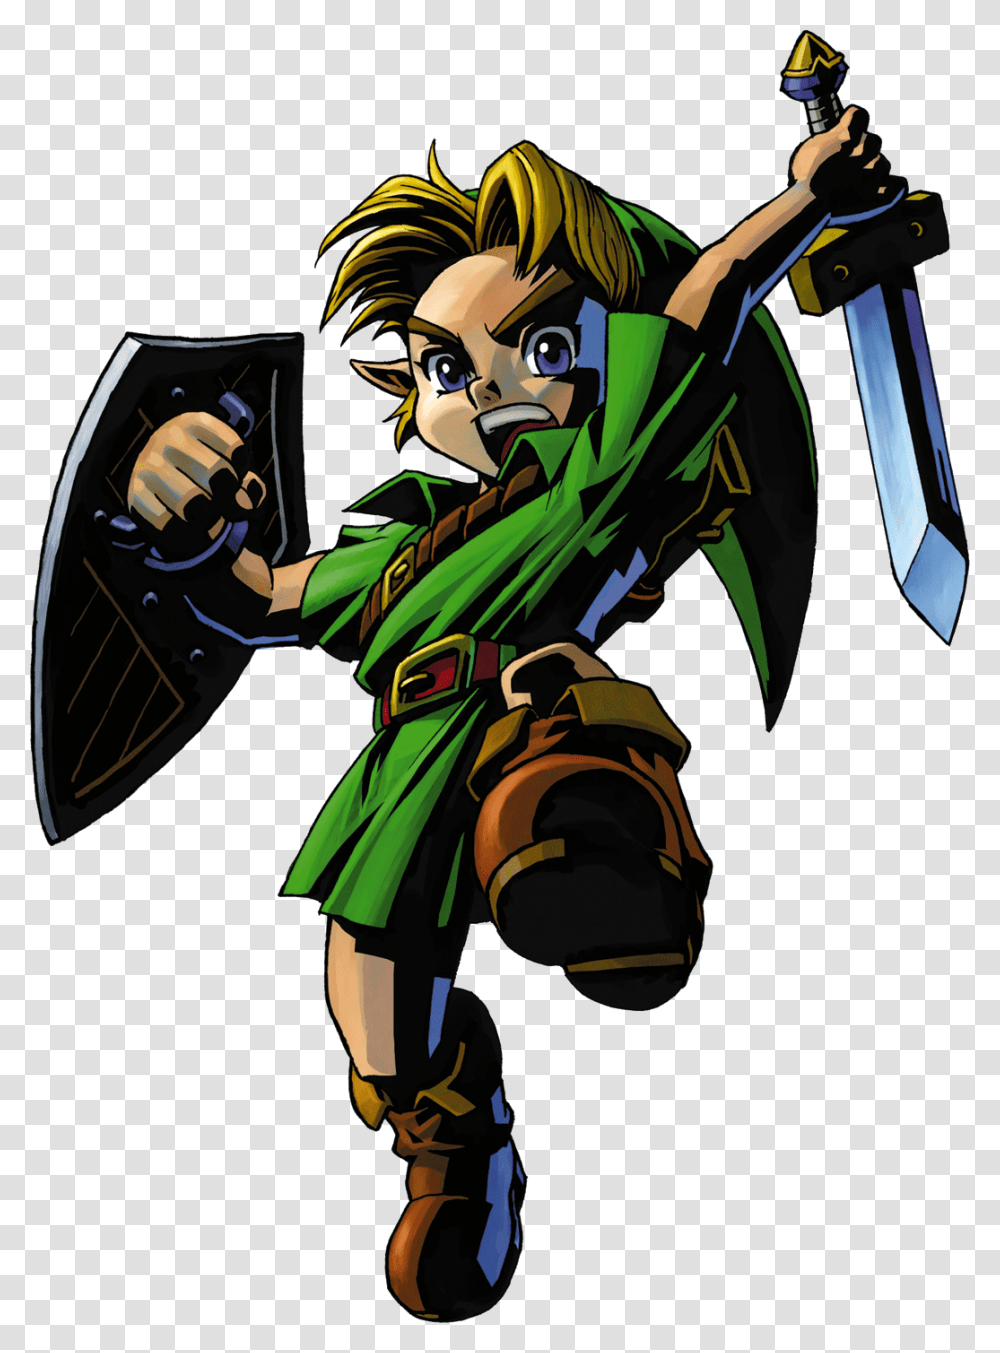 Link Zelda Majoras Mask, Hand, Person, Human, Legend Of Zelda Transparent Png